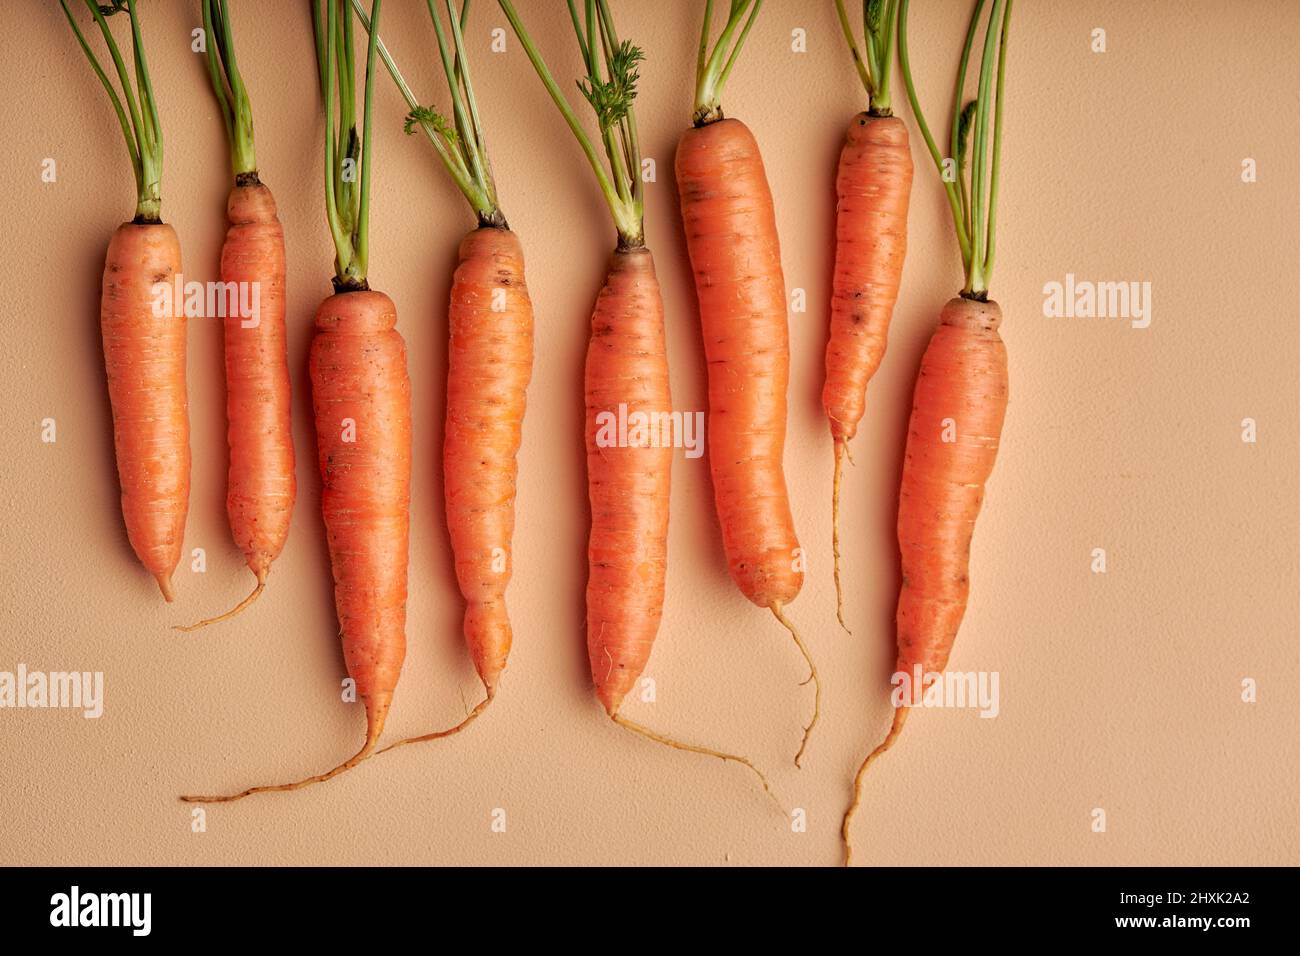 juego de zanahorias frescas maduras con hojas aisladas sobre fondo de color naranja pastel. vista superior sobre vegetales, espacio de copia, capa plana. nutrición, concepto de alimentos Foto de stock